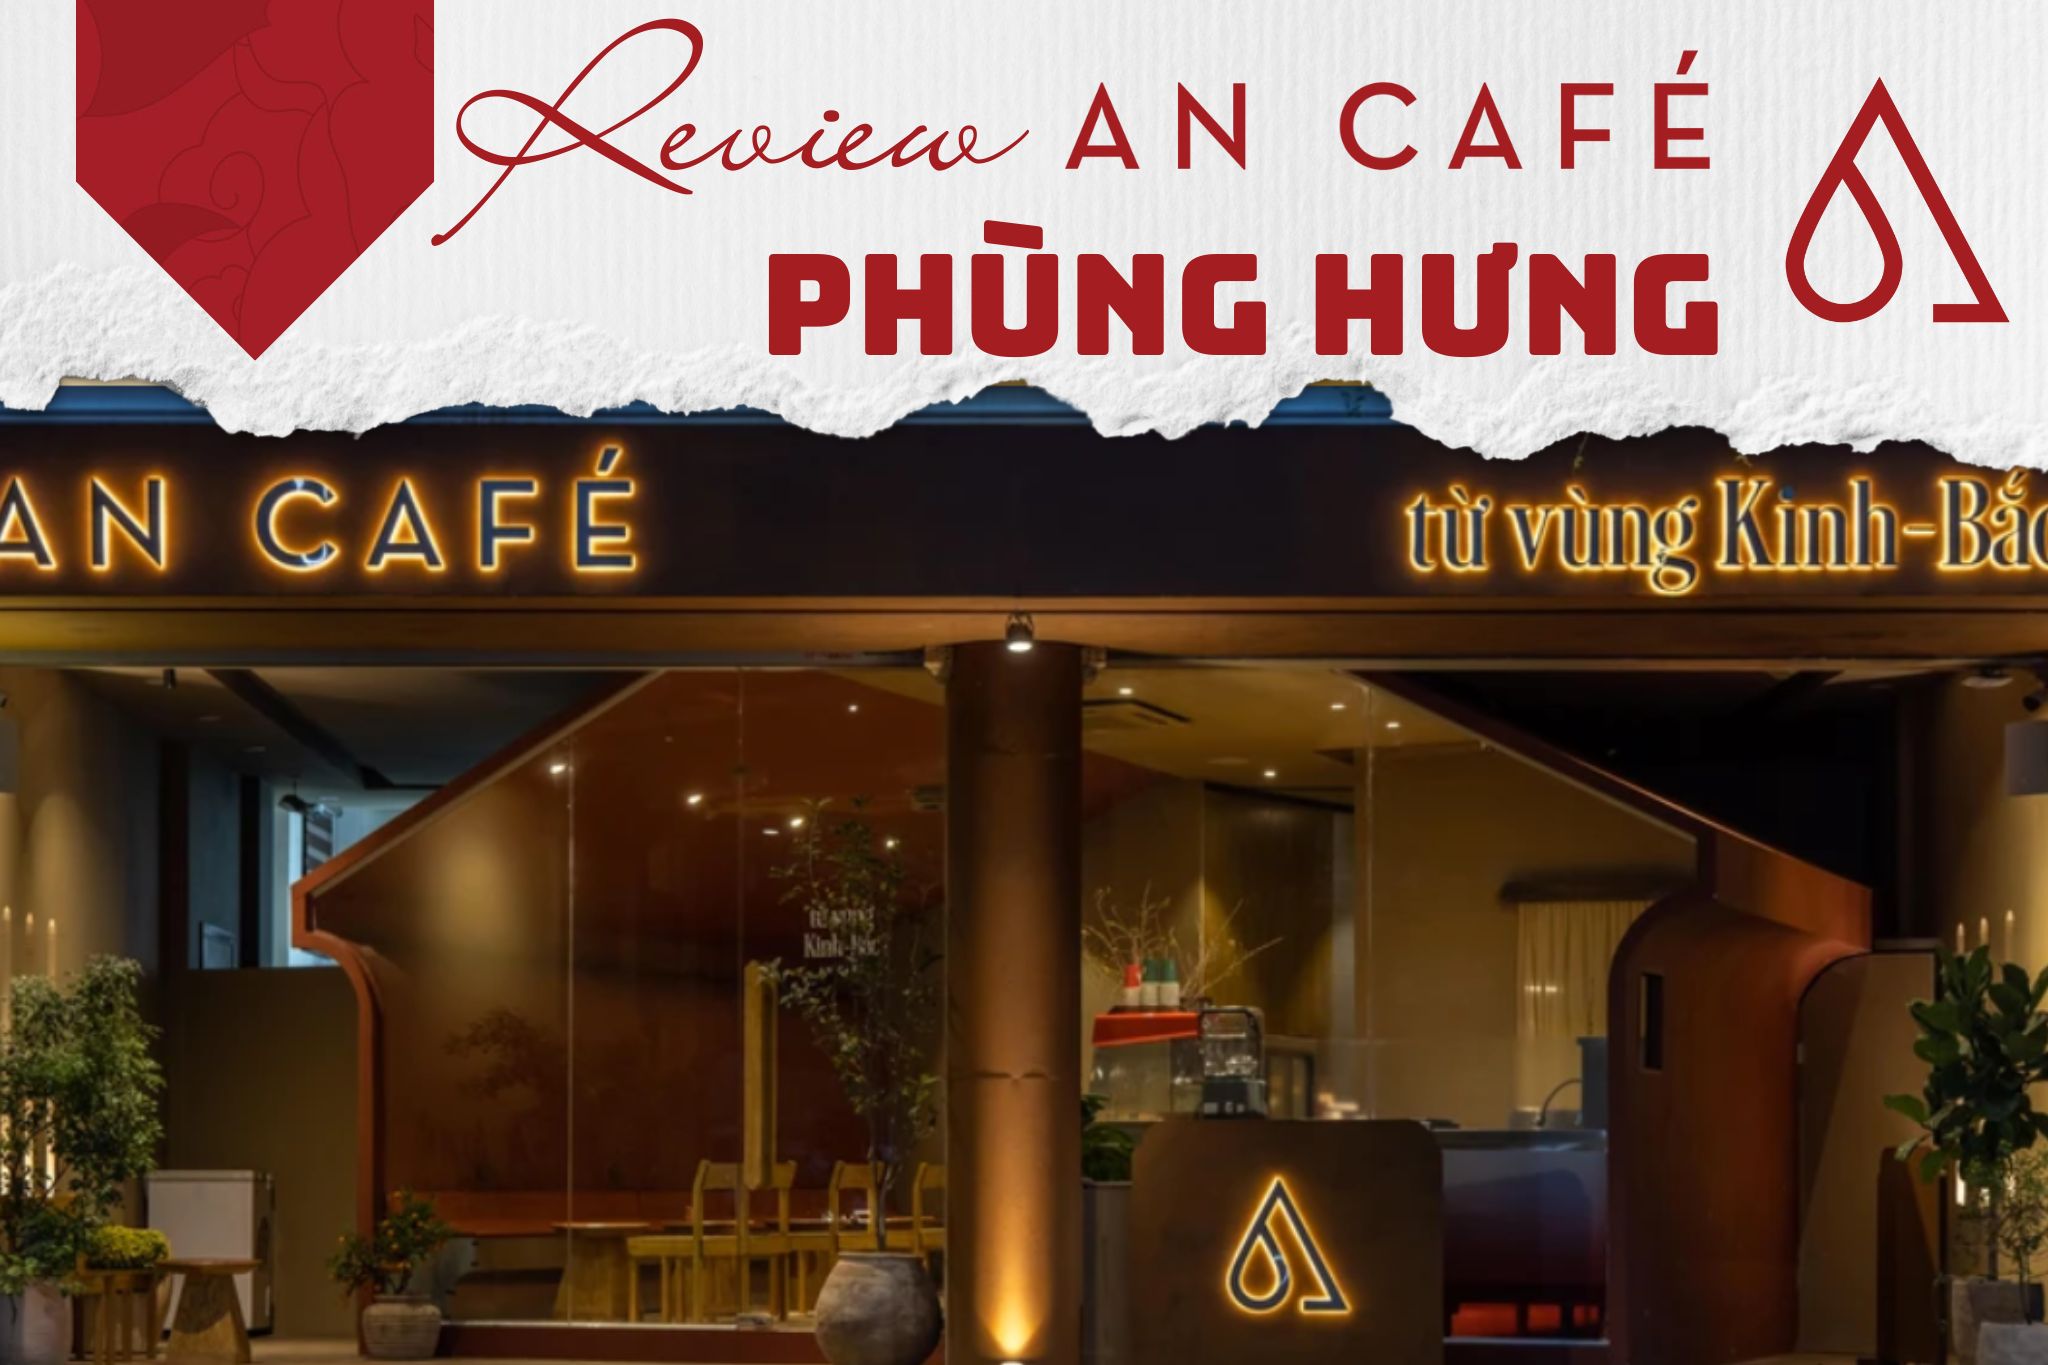 Review Thiết kế An Cafe Phùng Hưng - Từ vùng Kinh Bắc tới chốn Kinh Kỳ